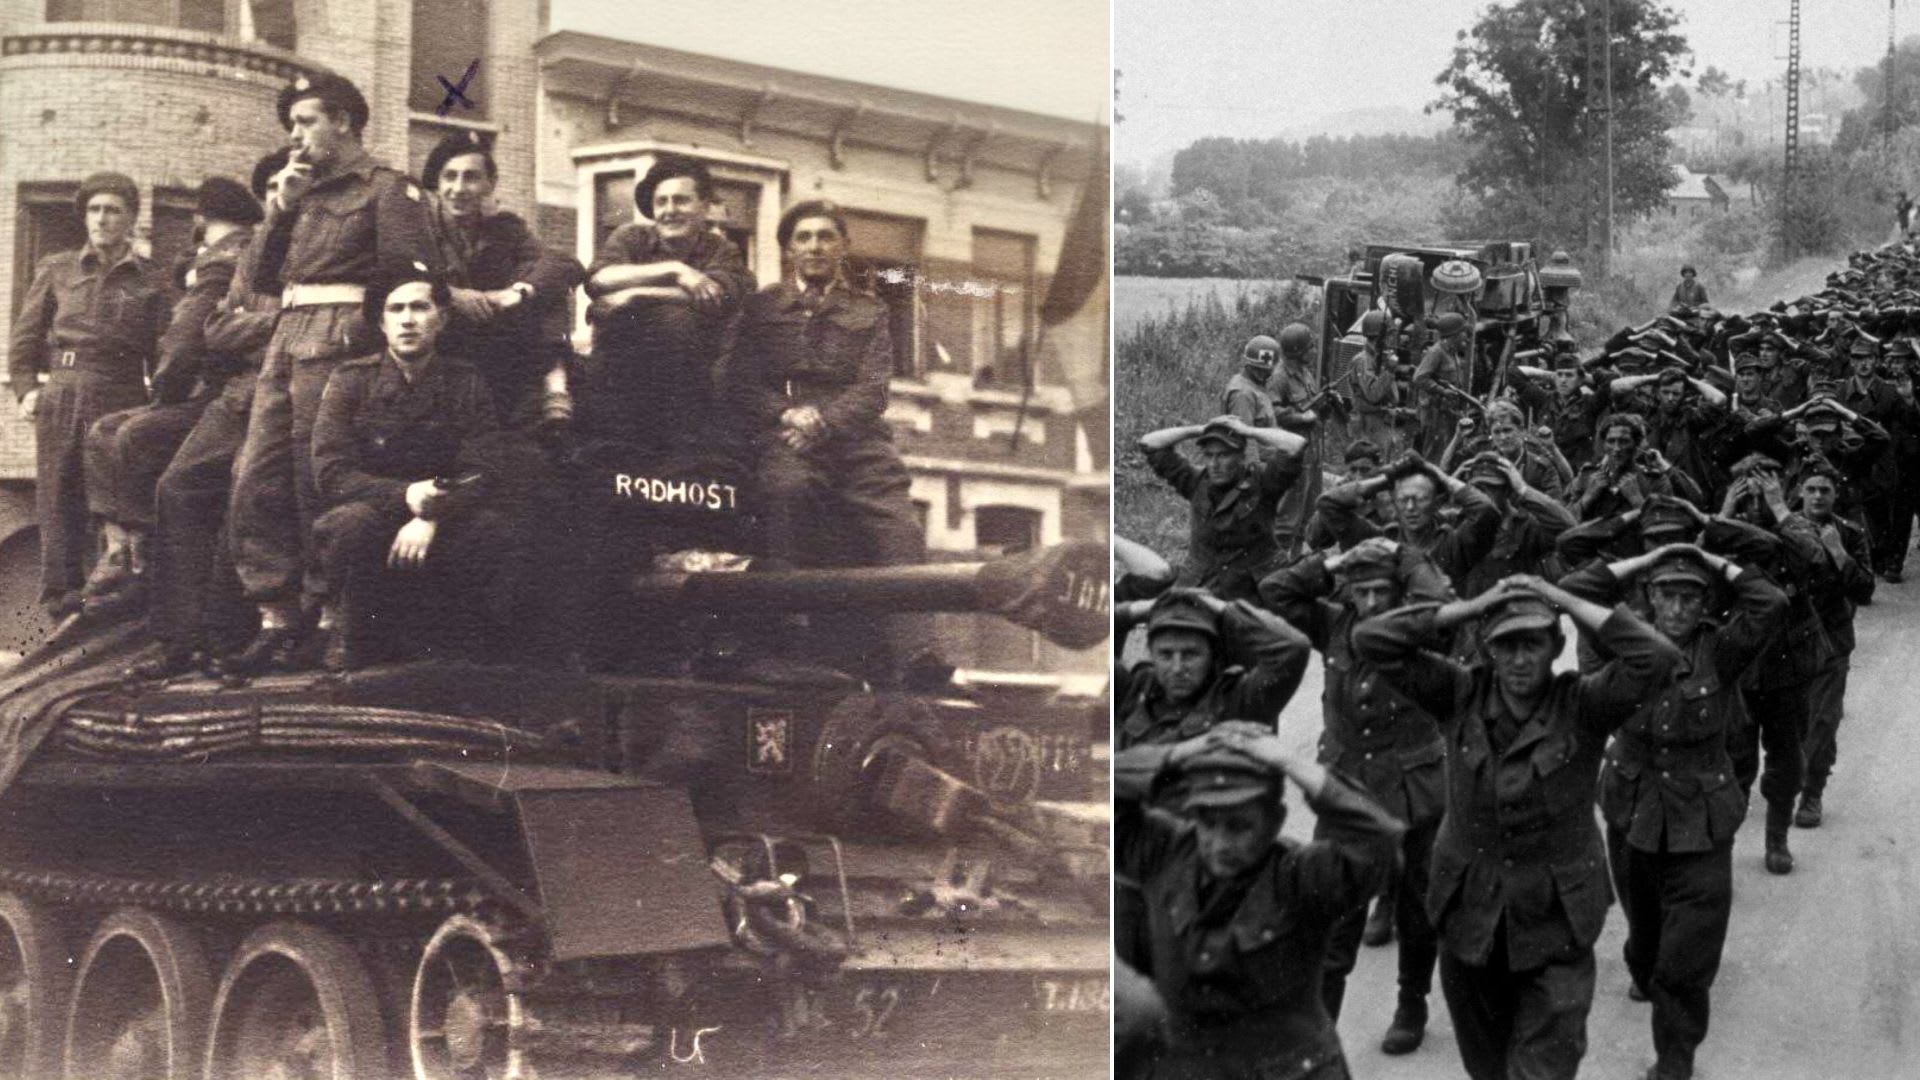 Českoslovenští tankisté a němečtí zajatci (ilustrační foto)